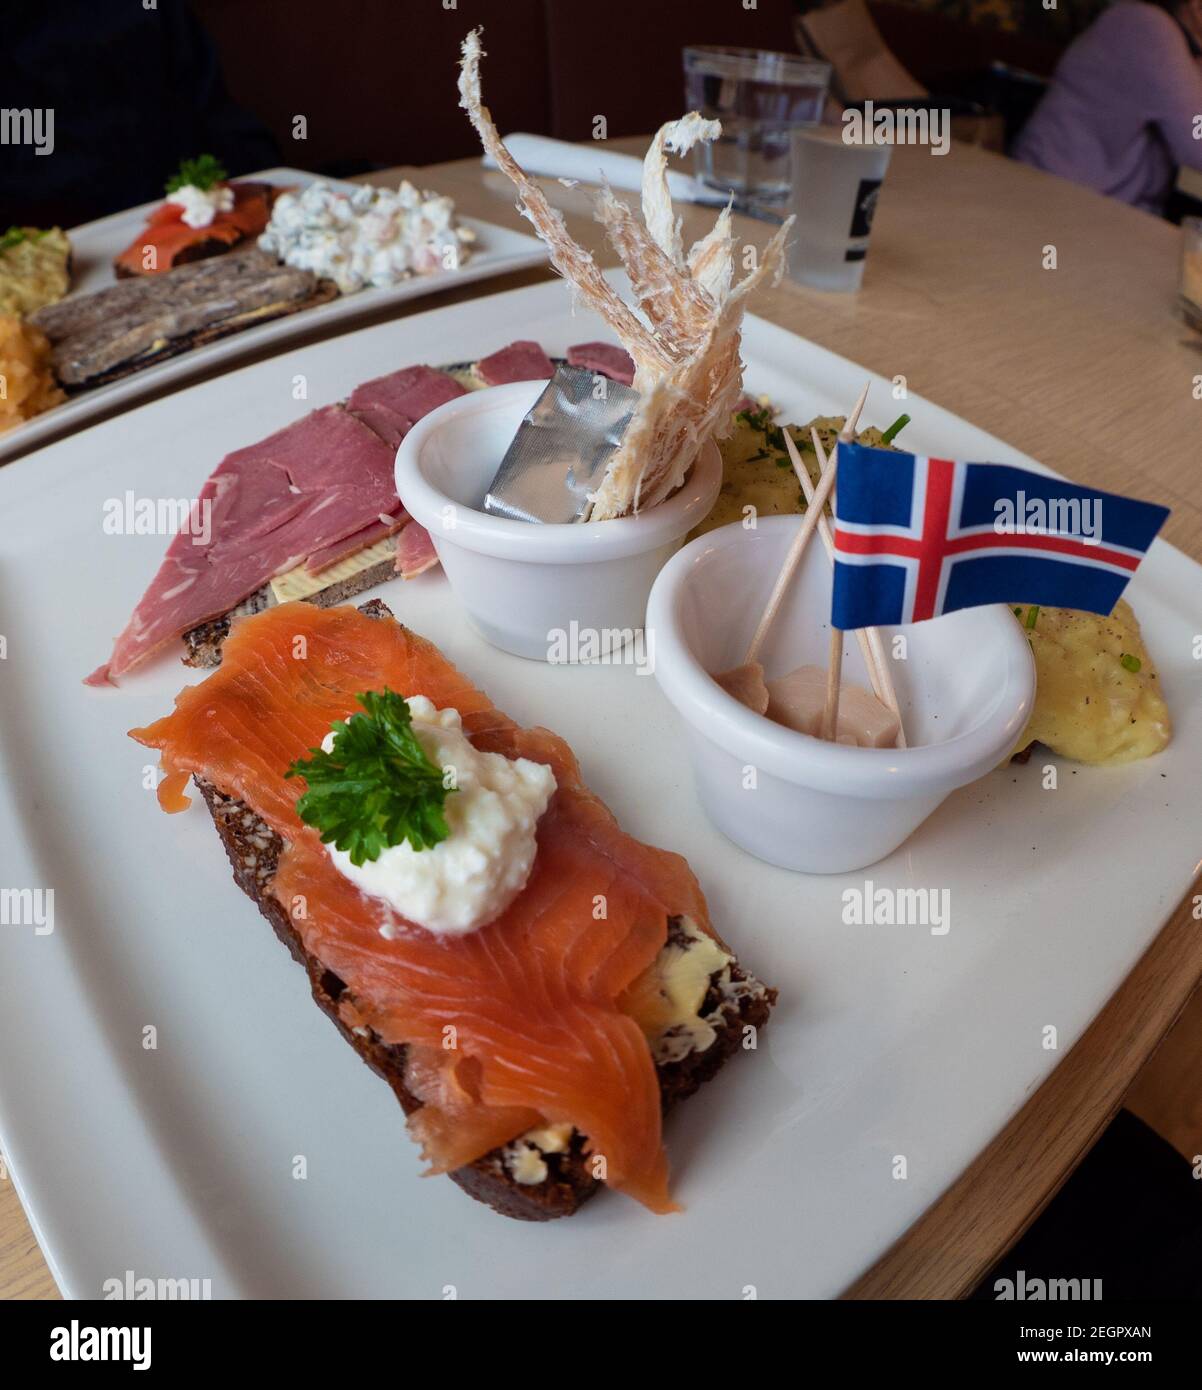 Piatto campione di cibo islandese con squalo fermentato, pesce secco, burro, trota affumicata e agnello, con bandiera islandese in cima Foto Stock